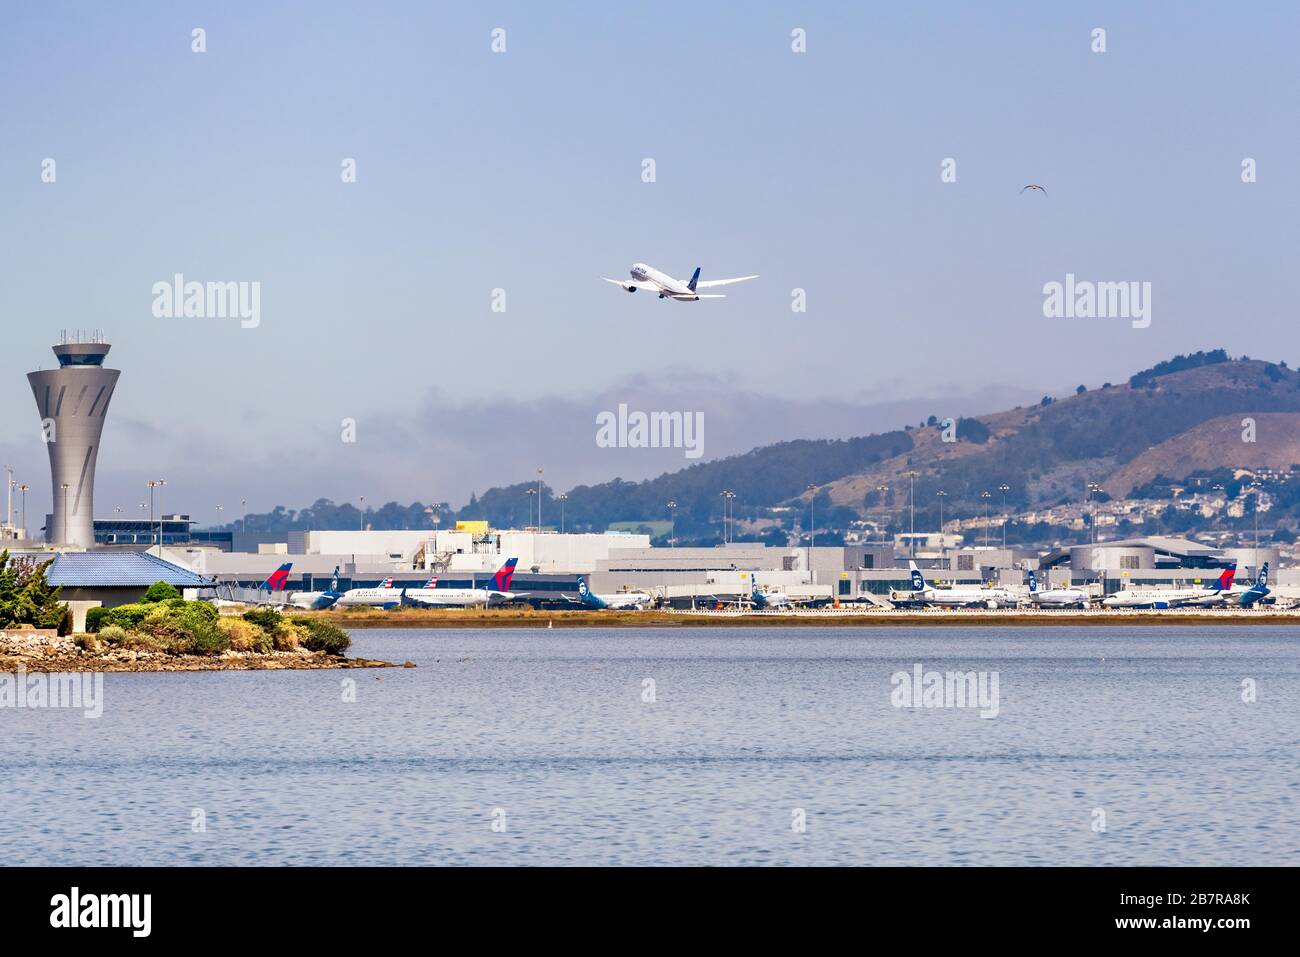 31 août 2019 San Francisco / CA / USA - Aéroport International de San Francisco (SFO) situé sur la rive de la baie de San Francisco; avions stationnés sur le t Banque D'Images